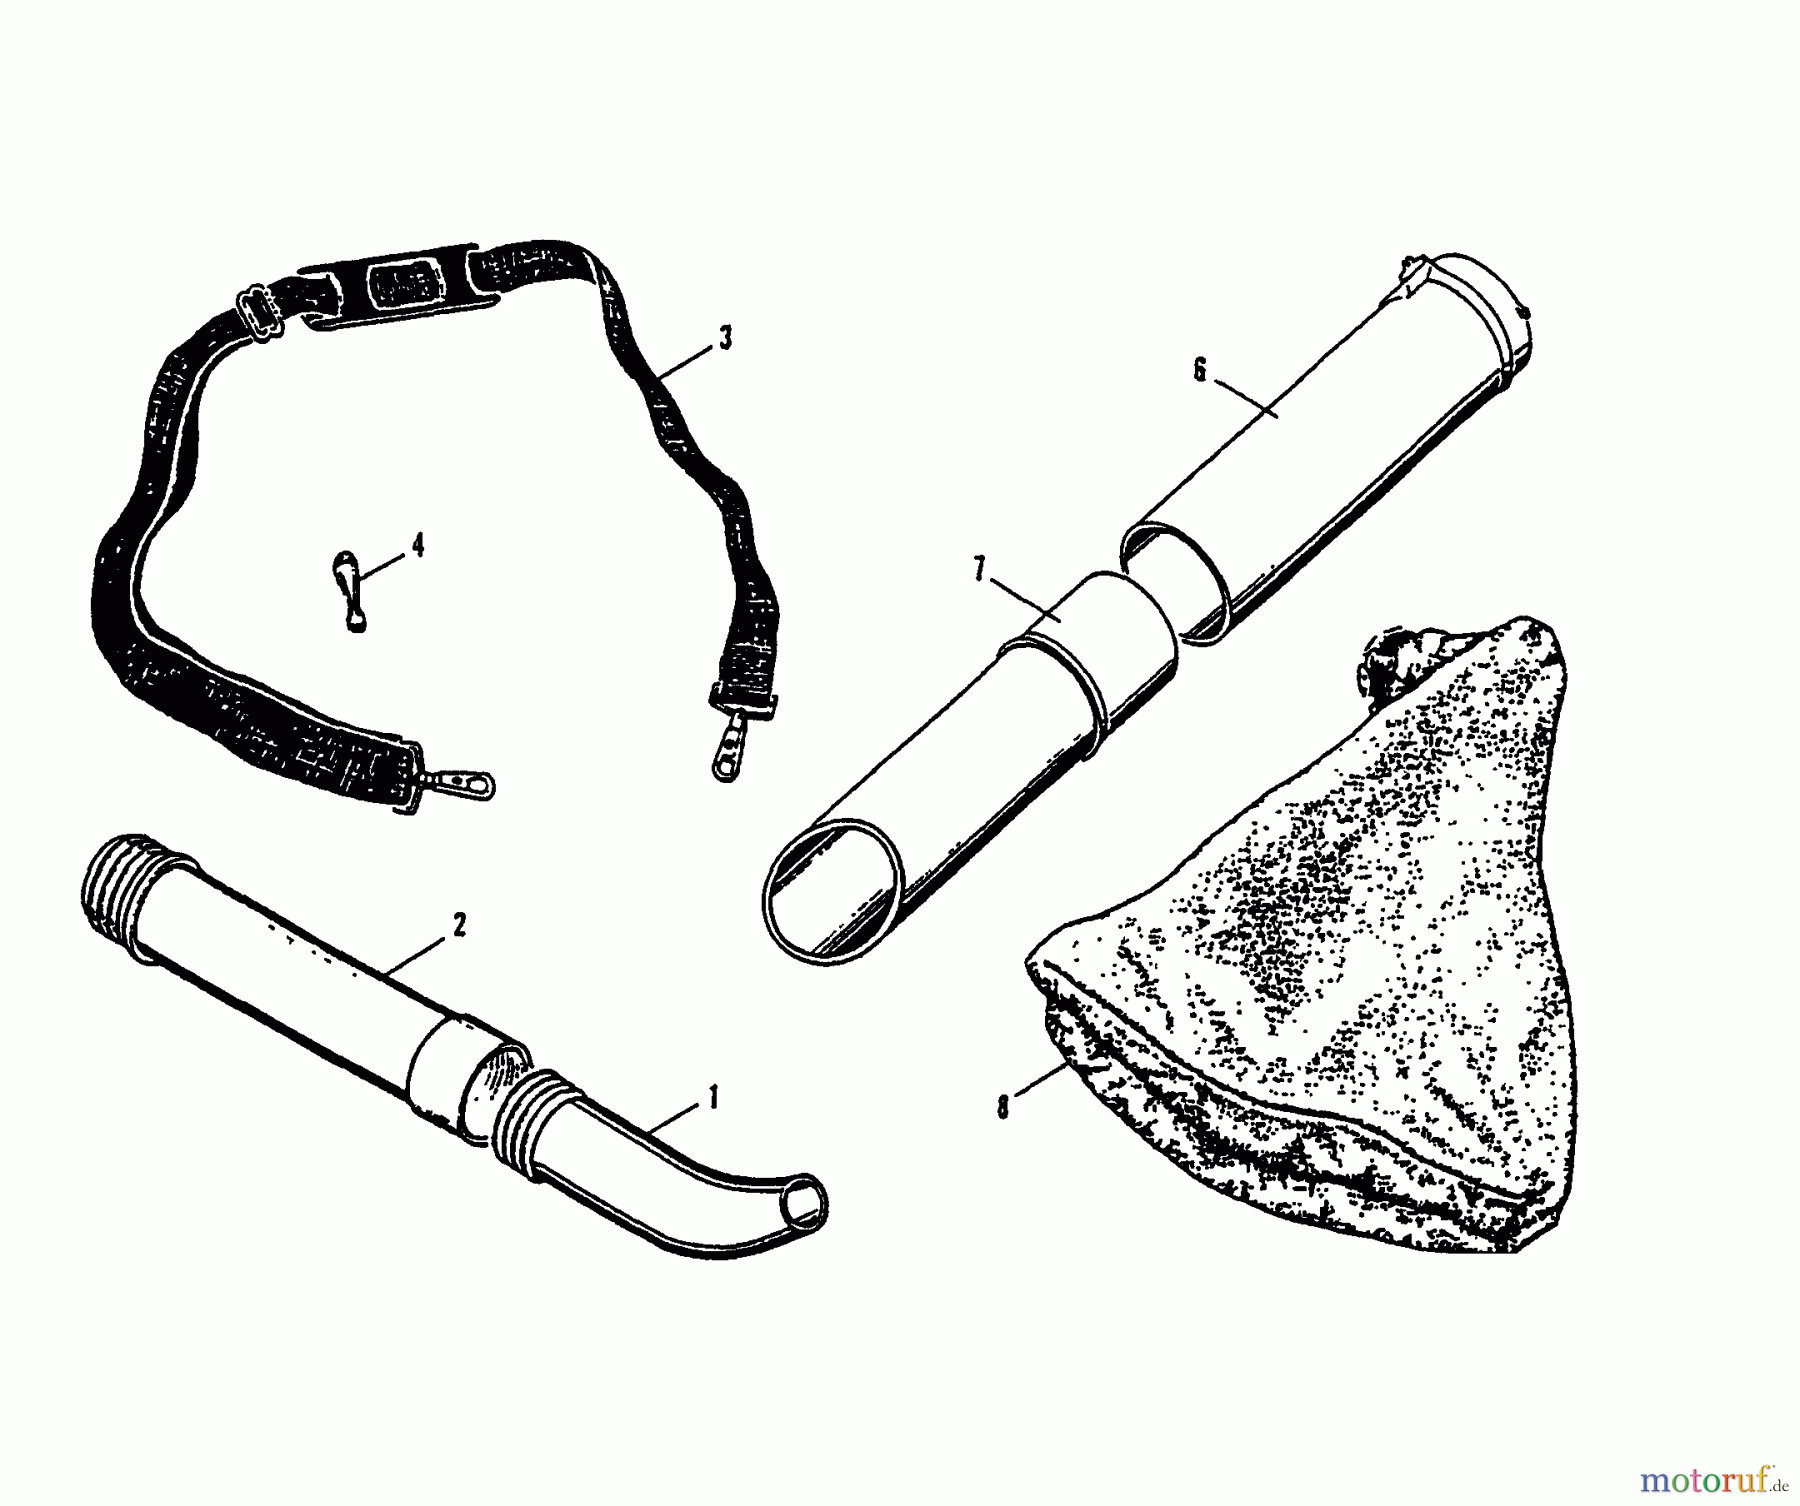  Shindaiwa Bläser / Sauger / Häcksler / Mulchgeräte YW254 - Shindaiwa Hand Held Blower (Yardware) Accessories